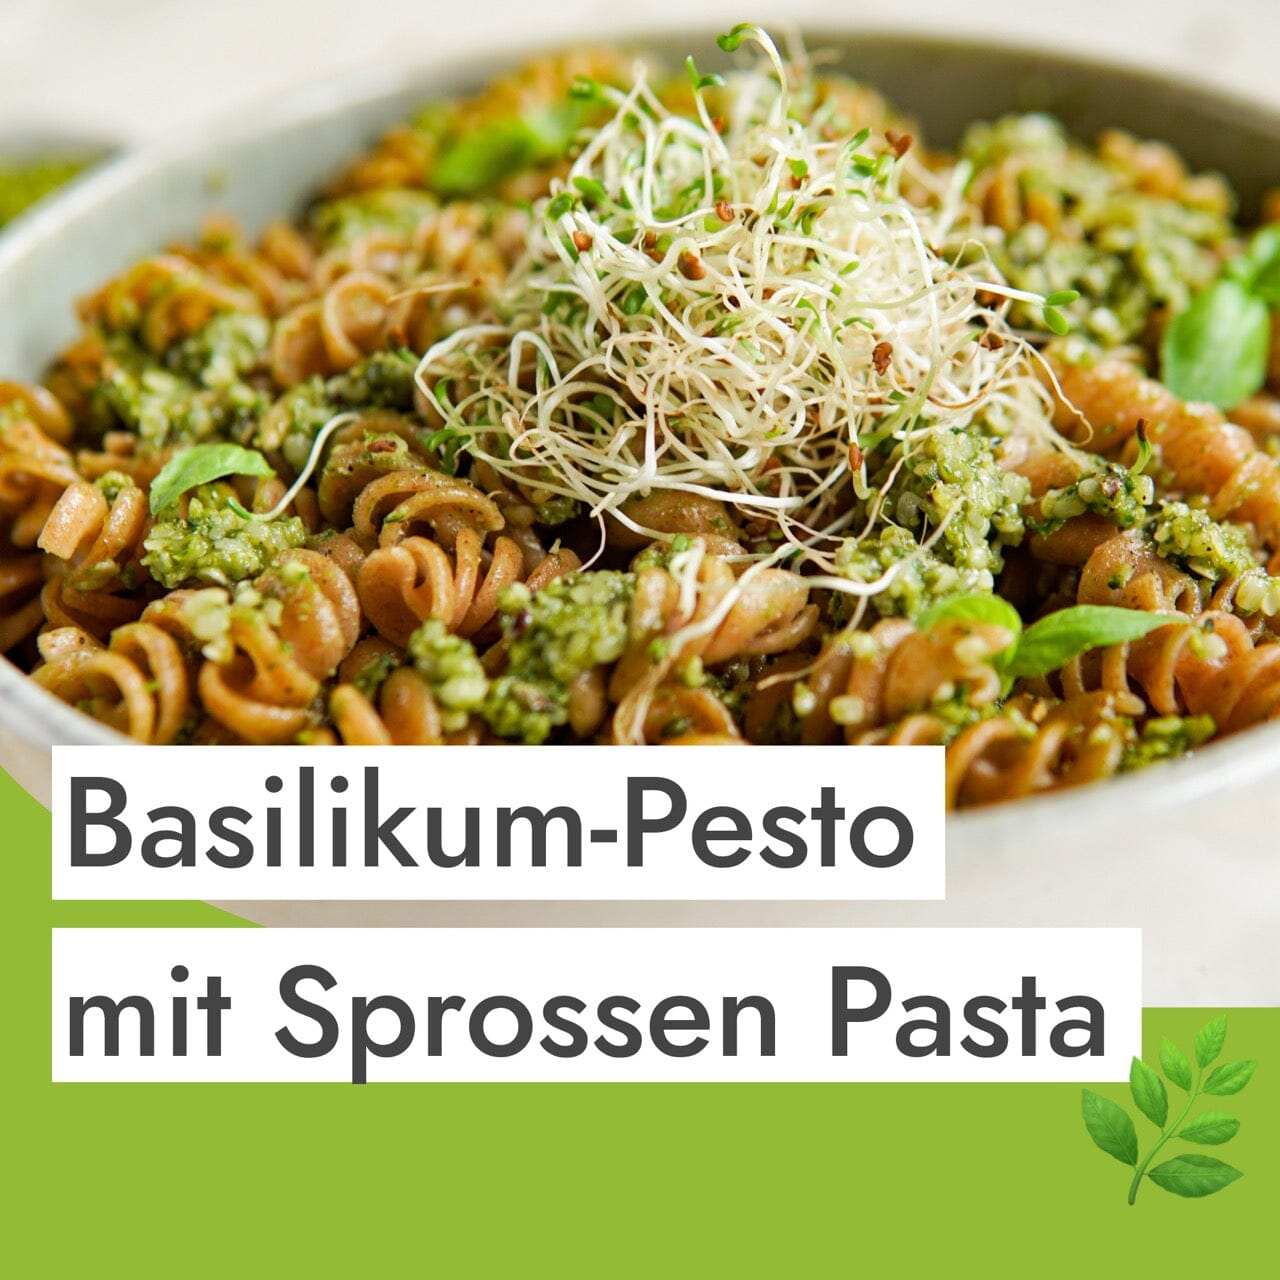 Basilikum-Pesto-Rezept für glutenfreie Pasta in nur 3 Minuten